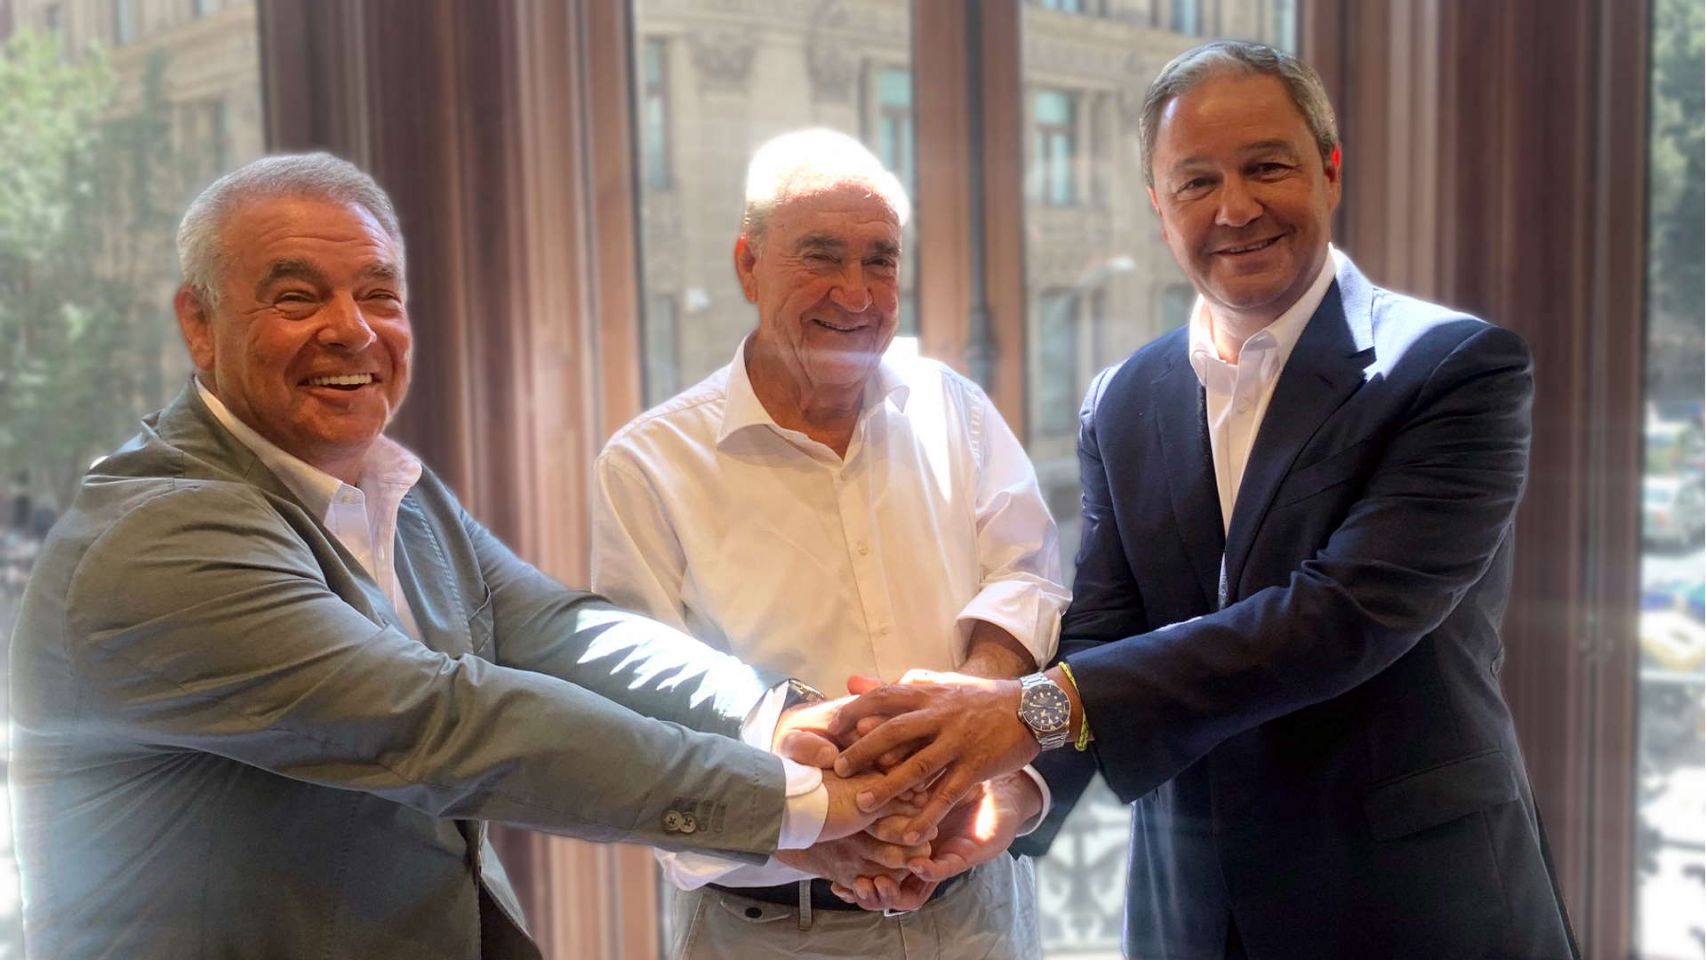 De izquierda a derecha: Walter Mattheus y Víctor Malpartida, CEO y presidente de Bilbomática, respectivamente, y  Constantino Fernández, presidente de Grupo Altia